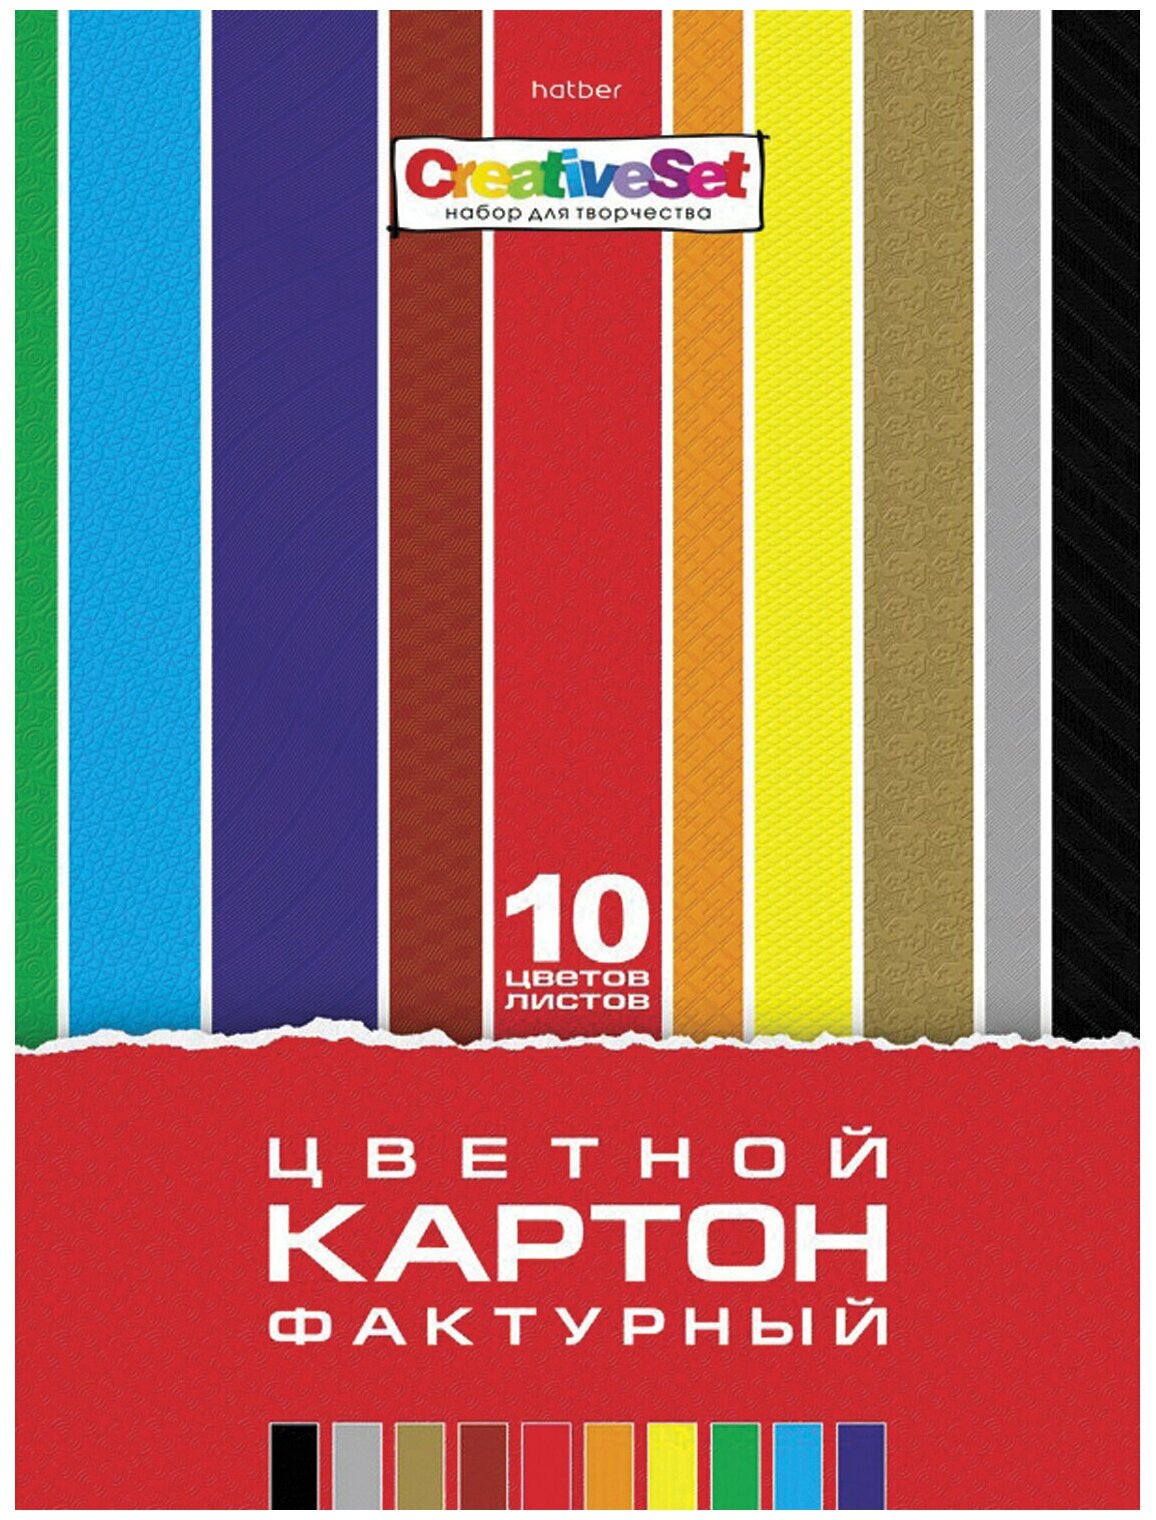 Цветной картон Hatber А4, фактурный, 10 листов, 10 цветов, 205х295 мм, Creative Set (10Кц4т_05934)